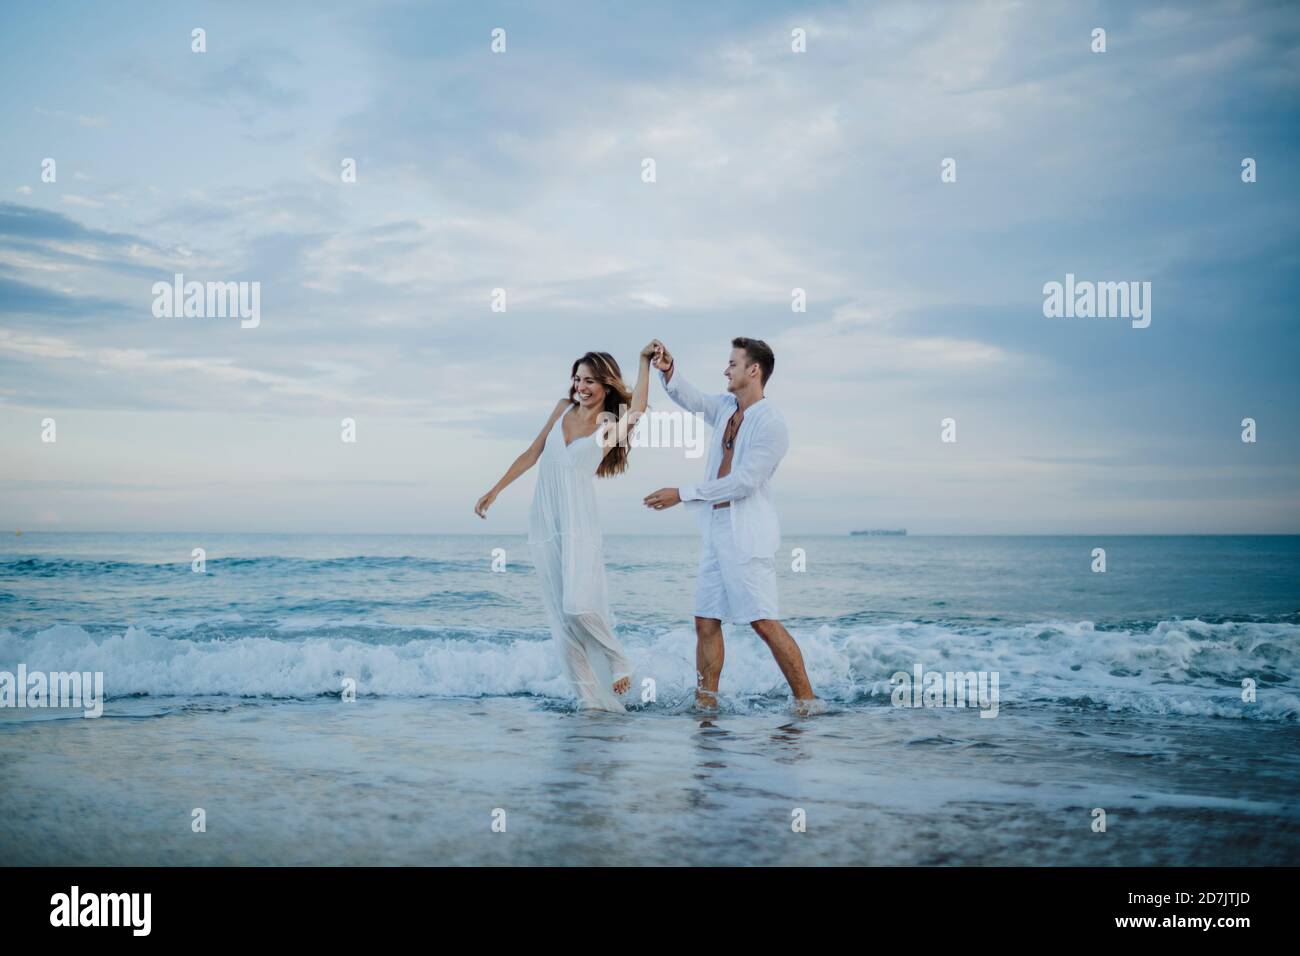 Giovane coppia che gira donna mentre balla in acqua in spiaggia Foto Stock